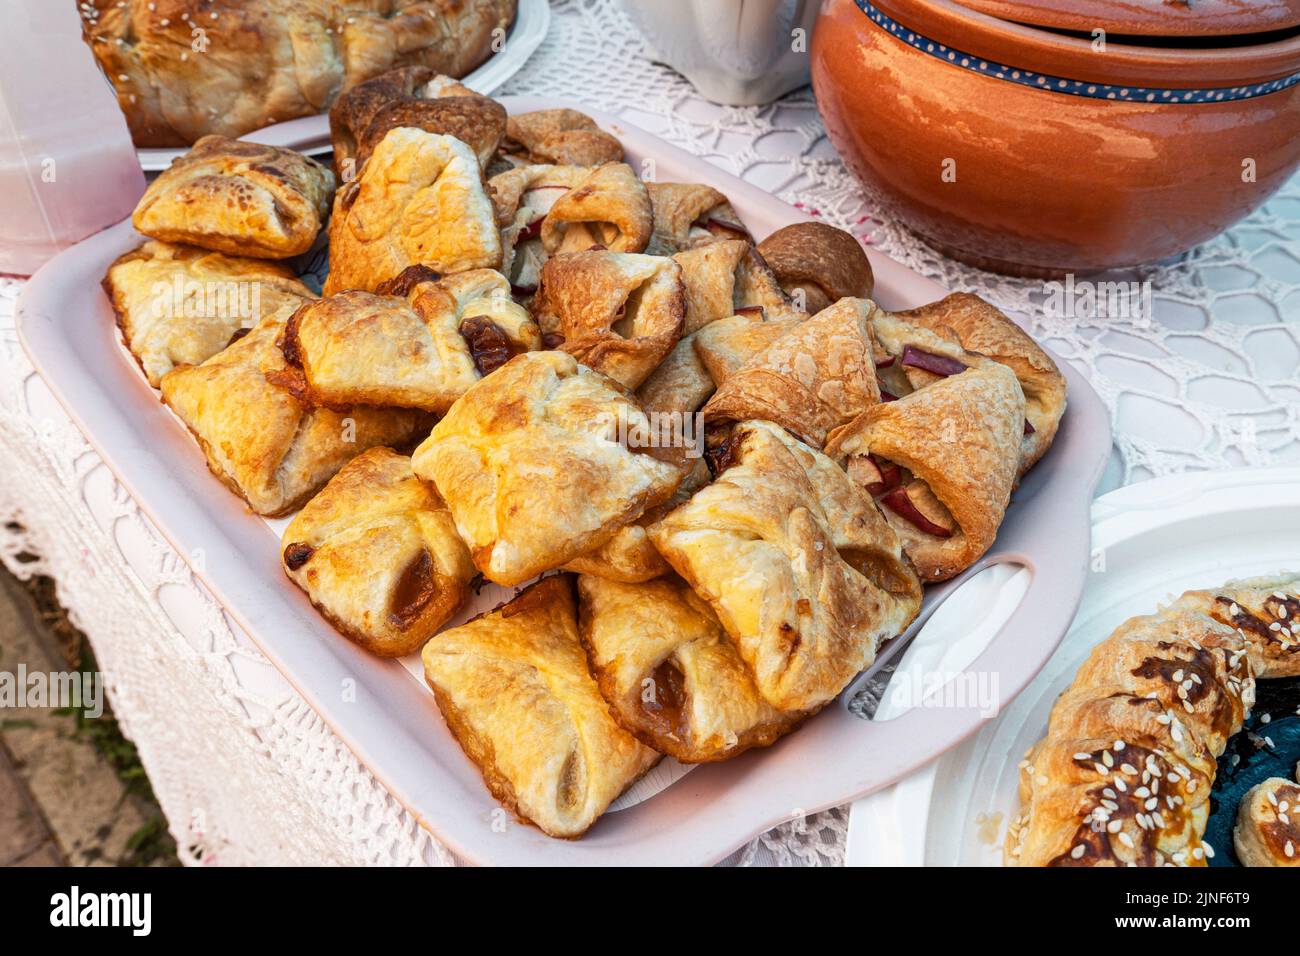 Galletas dulces con mermelada de manzana en un plato sobre la mesa Foto de stock